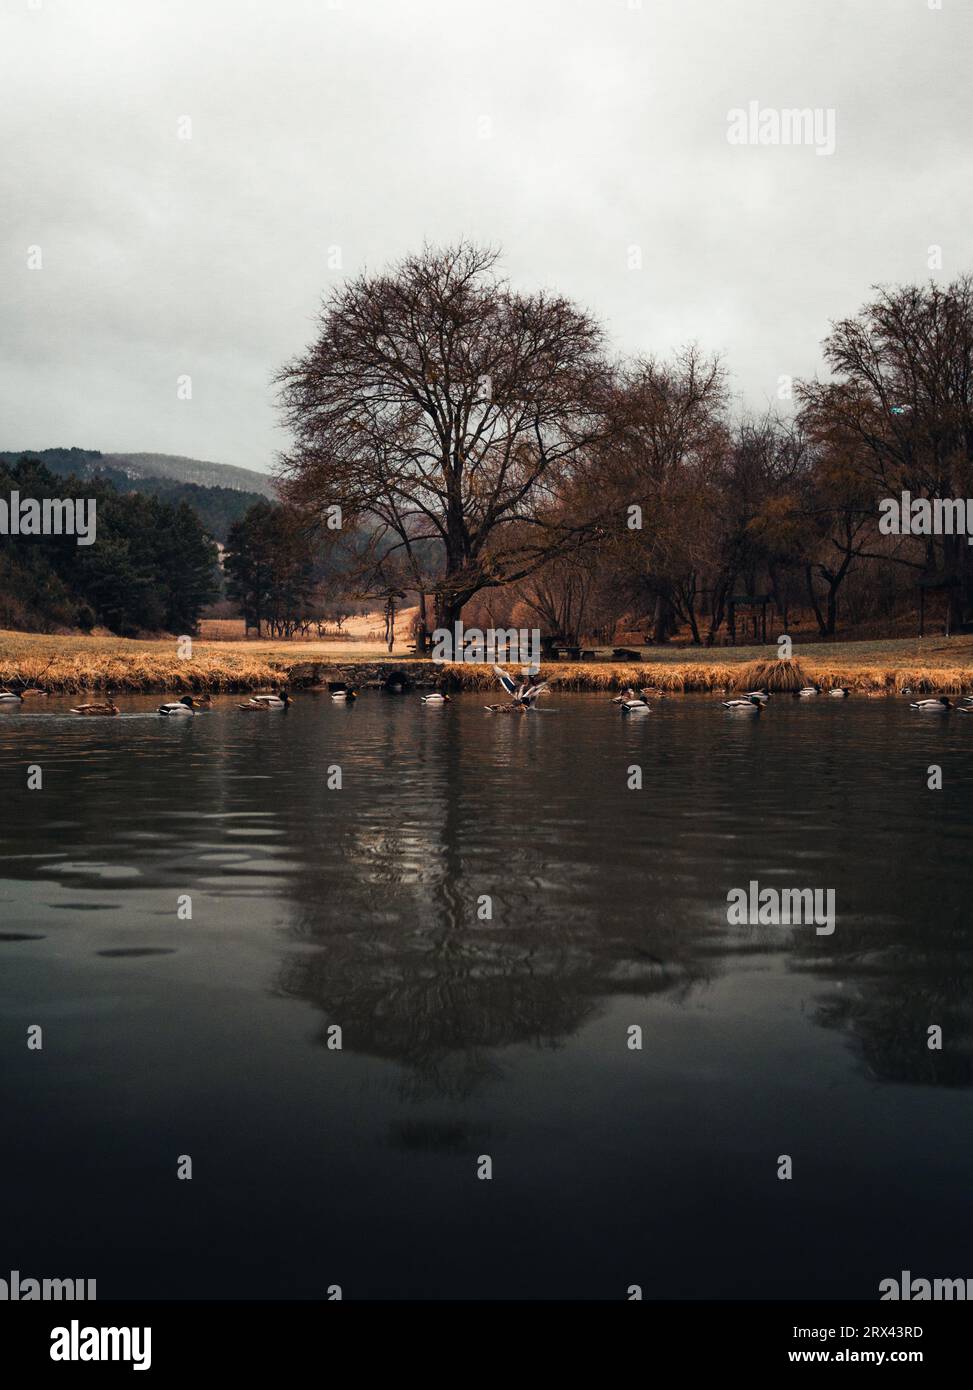 Immagine drammatica del bellissimo lago lungoso (stagno) con un grande albero e un prato sullo sfondo. Foto noiosa di albero nel parco in inverno con anatre sul sur Foto Stock